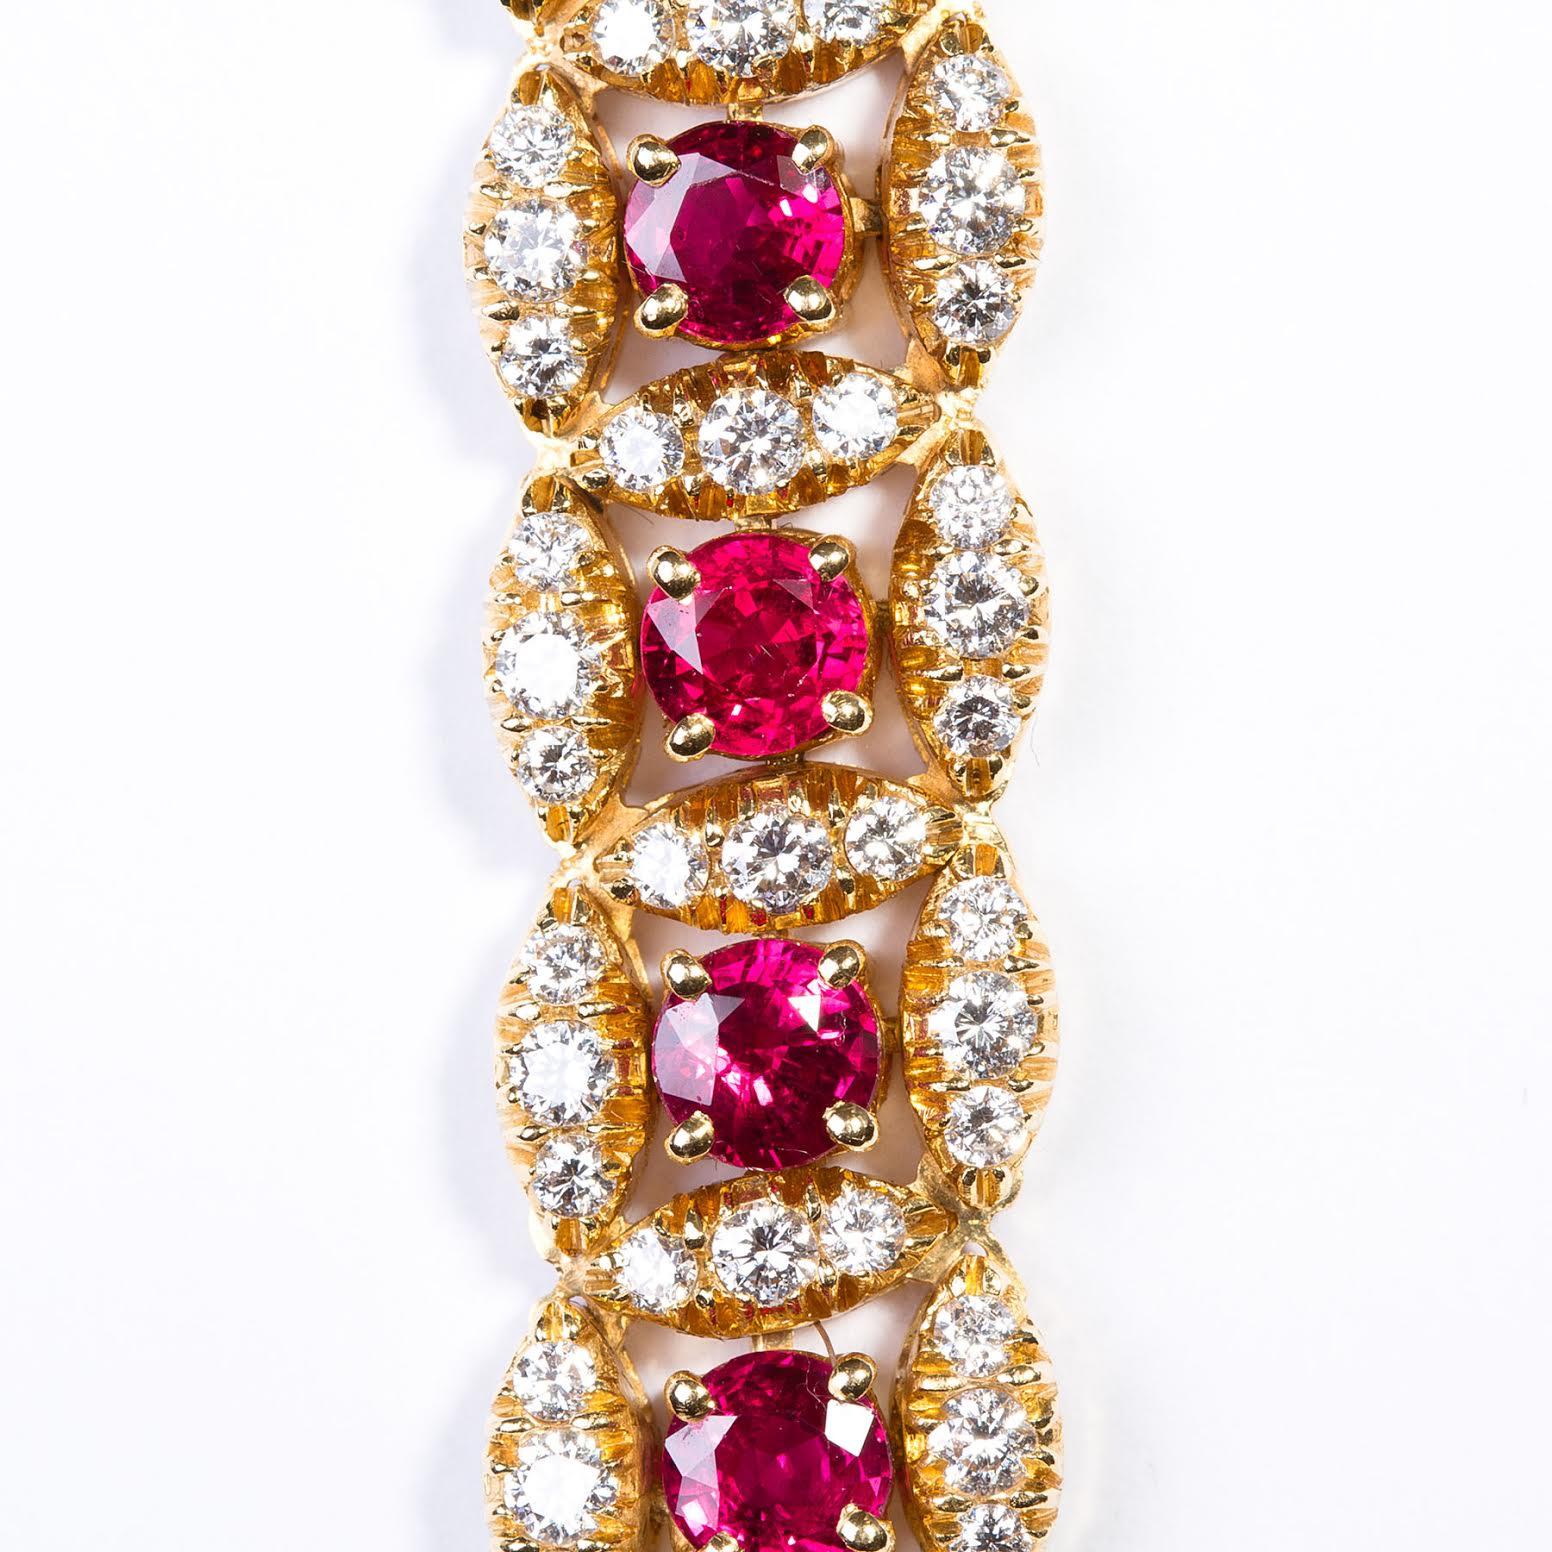 Schönes Original Oscar Heyman Rubin und Diamant Armband circa 1980er Jahre in 18k Gelbgold gefertigt. Dieses einzigartige und wunderschön gearbeitete Armband präsentiert 22 purpurrote Rubine mit einem Gesamtgewicht von ca. 12,1 Karat, umgeben von